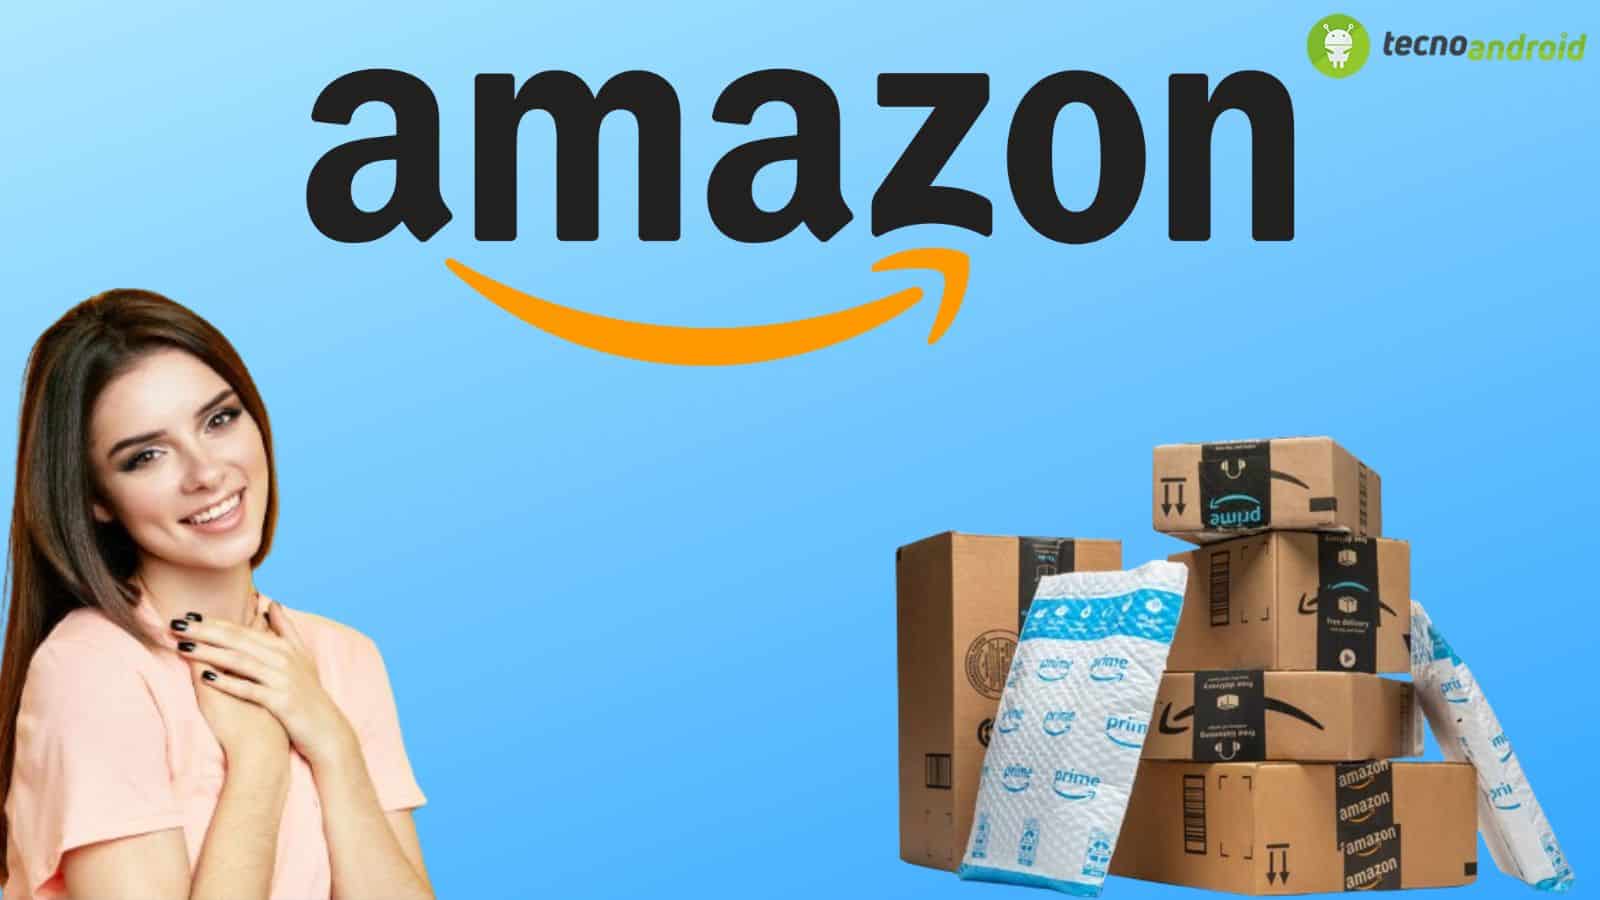 Amazon, prezzi assurdi nella categoria ELETTRONICA: la lista